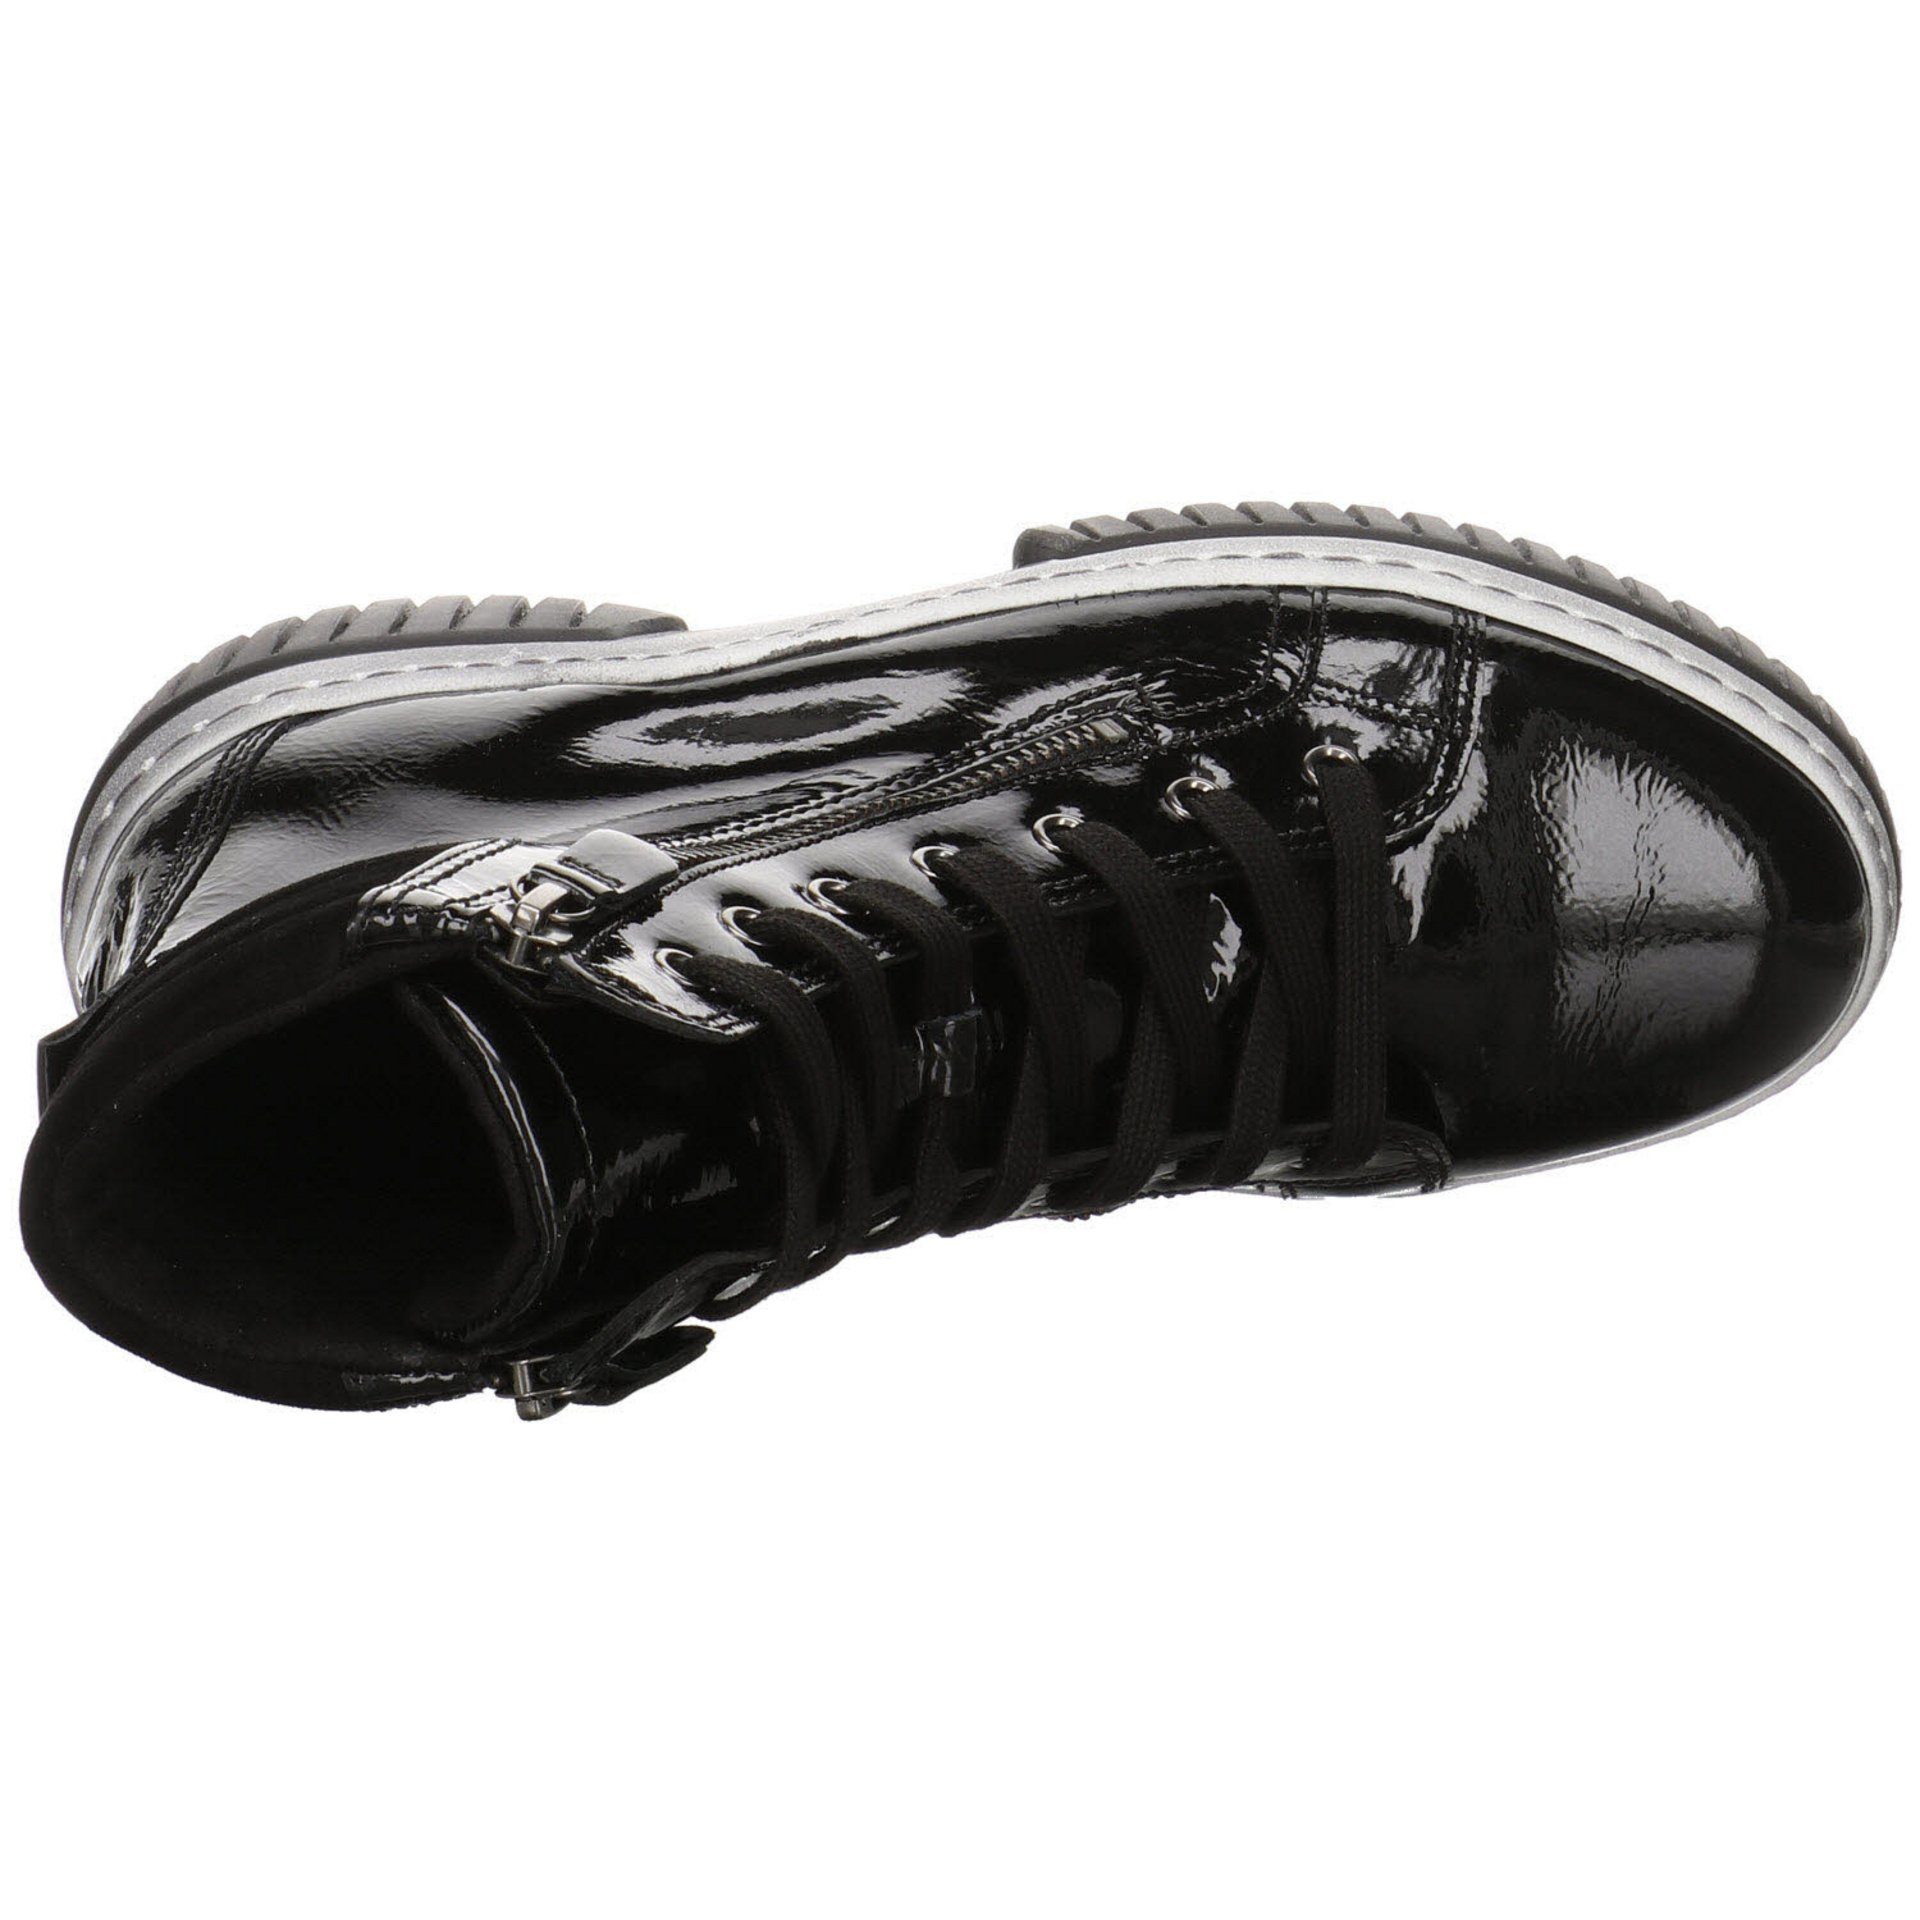 Lackleder Schuhe Damen Gabor Schnürstiefel schwarz(altsilber) Freizeit Elegant Stiefeletten Boots